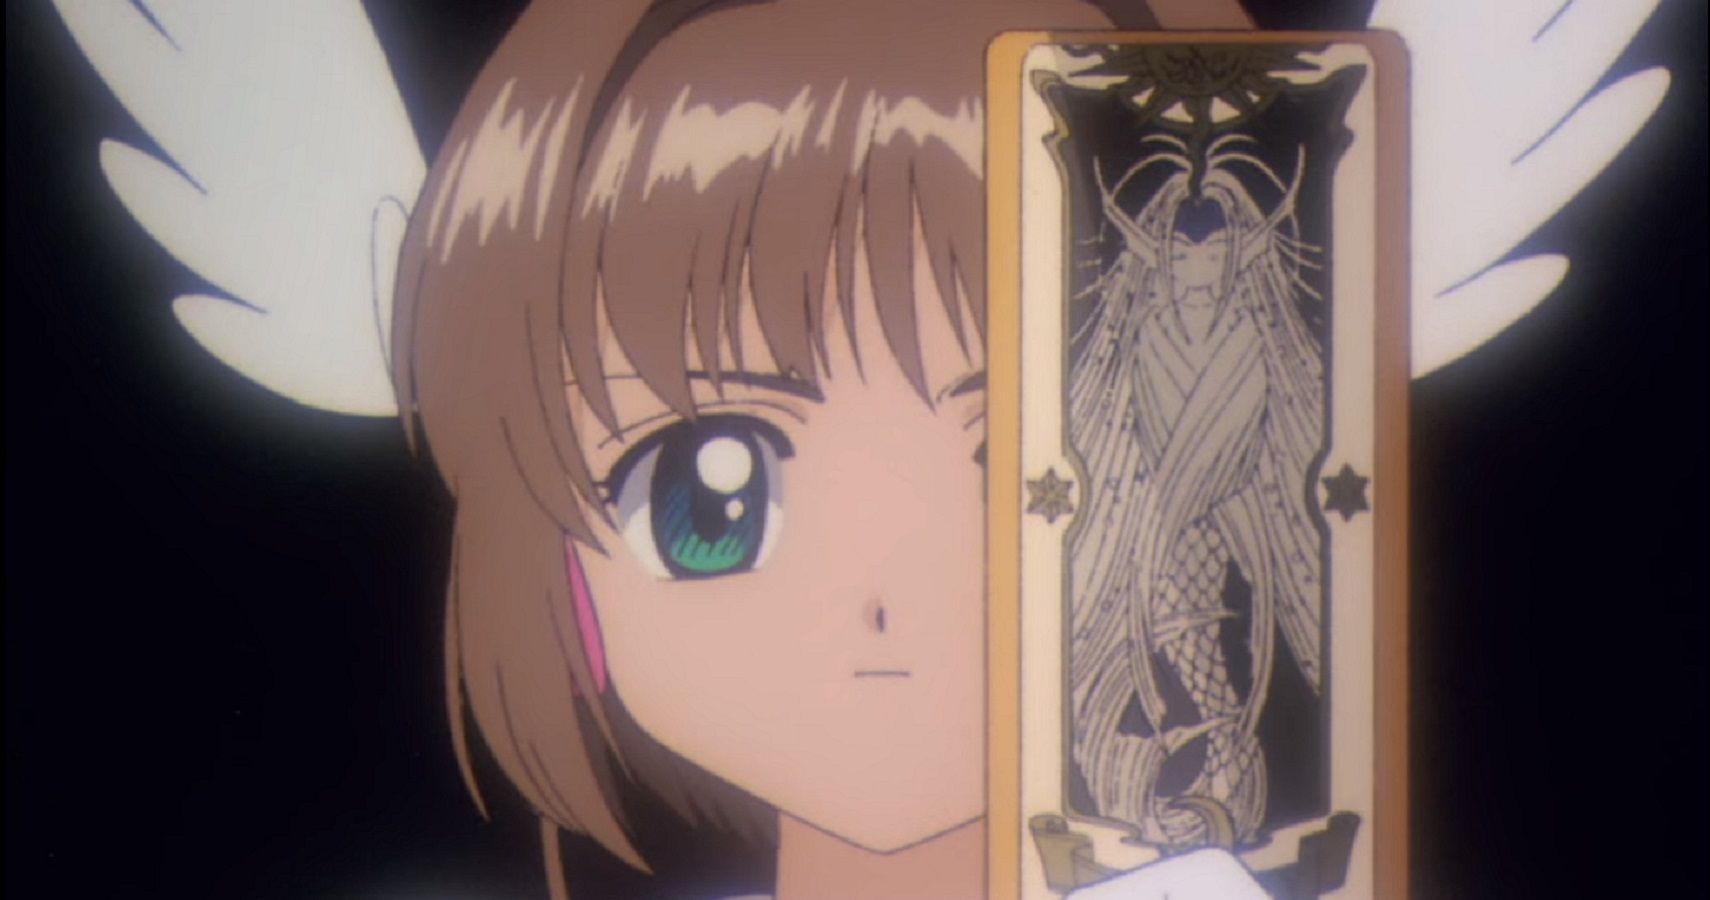 You Know, A Cardcaptor Sakura Card Game Actually Makes Sense